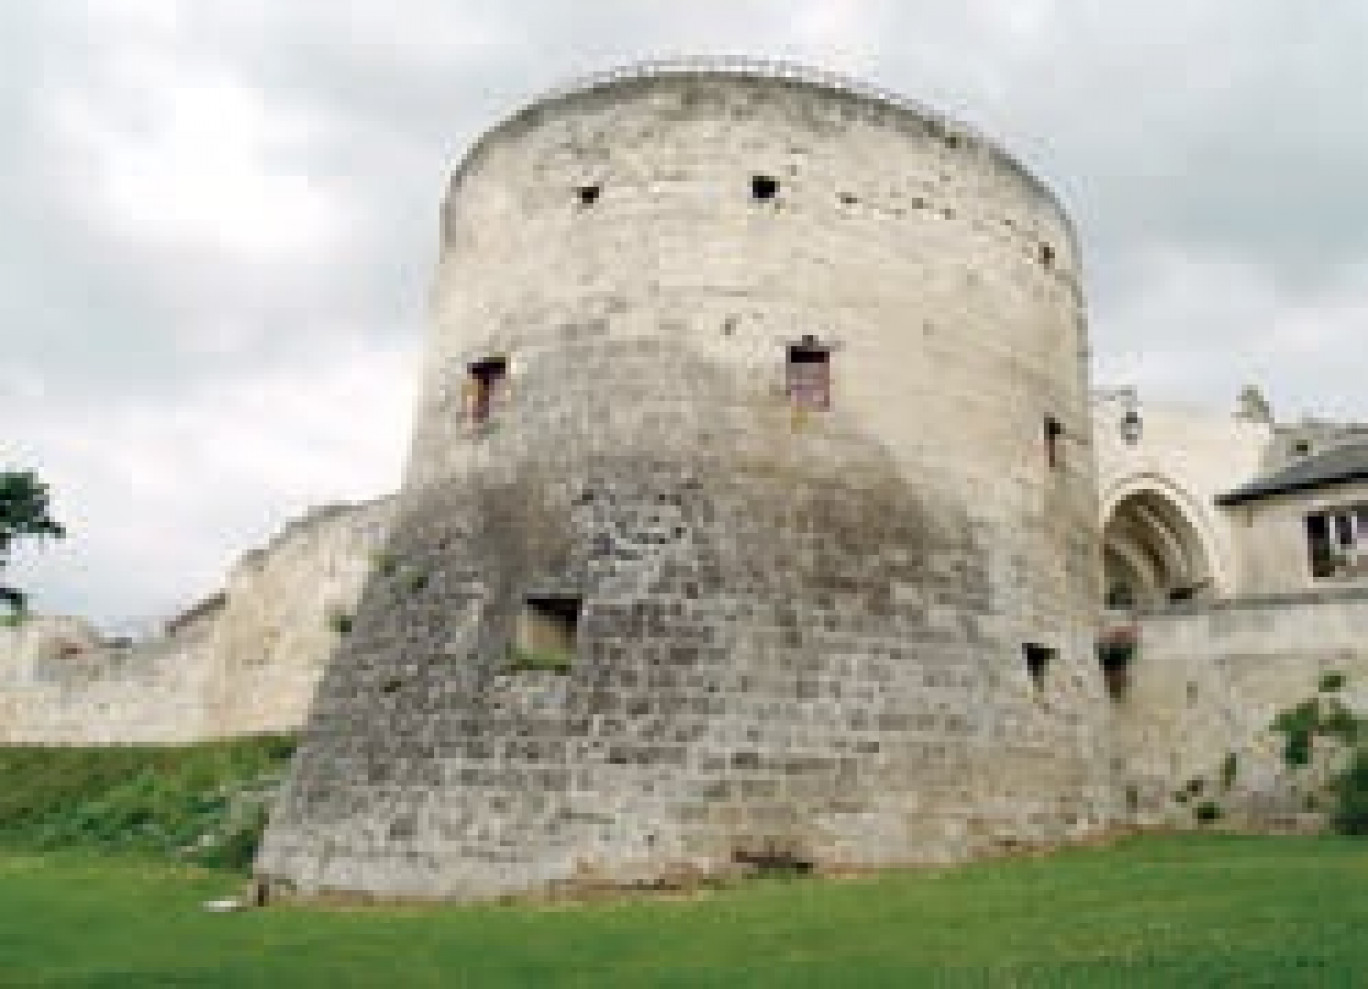 Le château fort de Coucy constitue l’une des grandes attractions du territoire